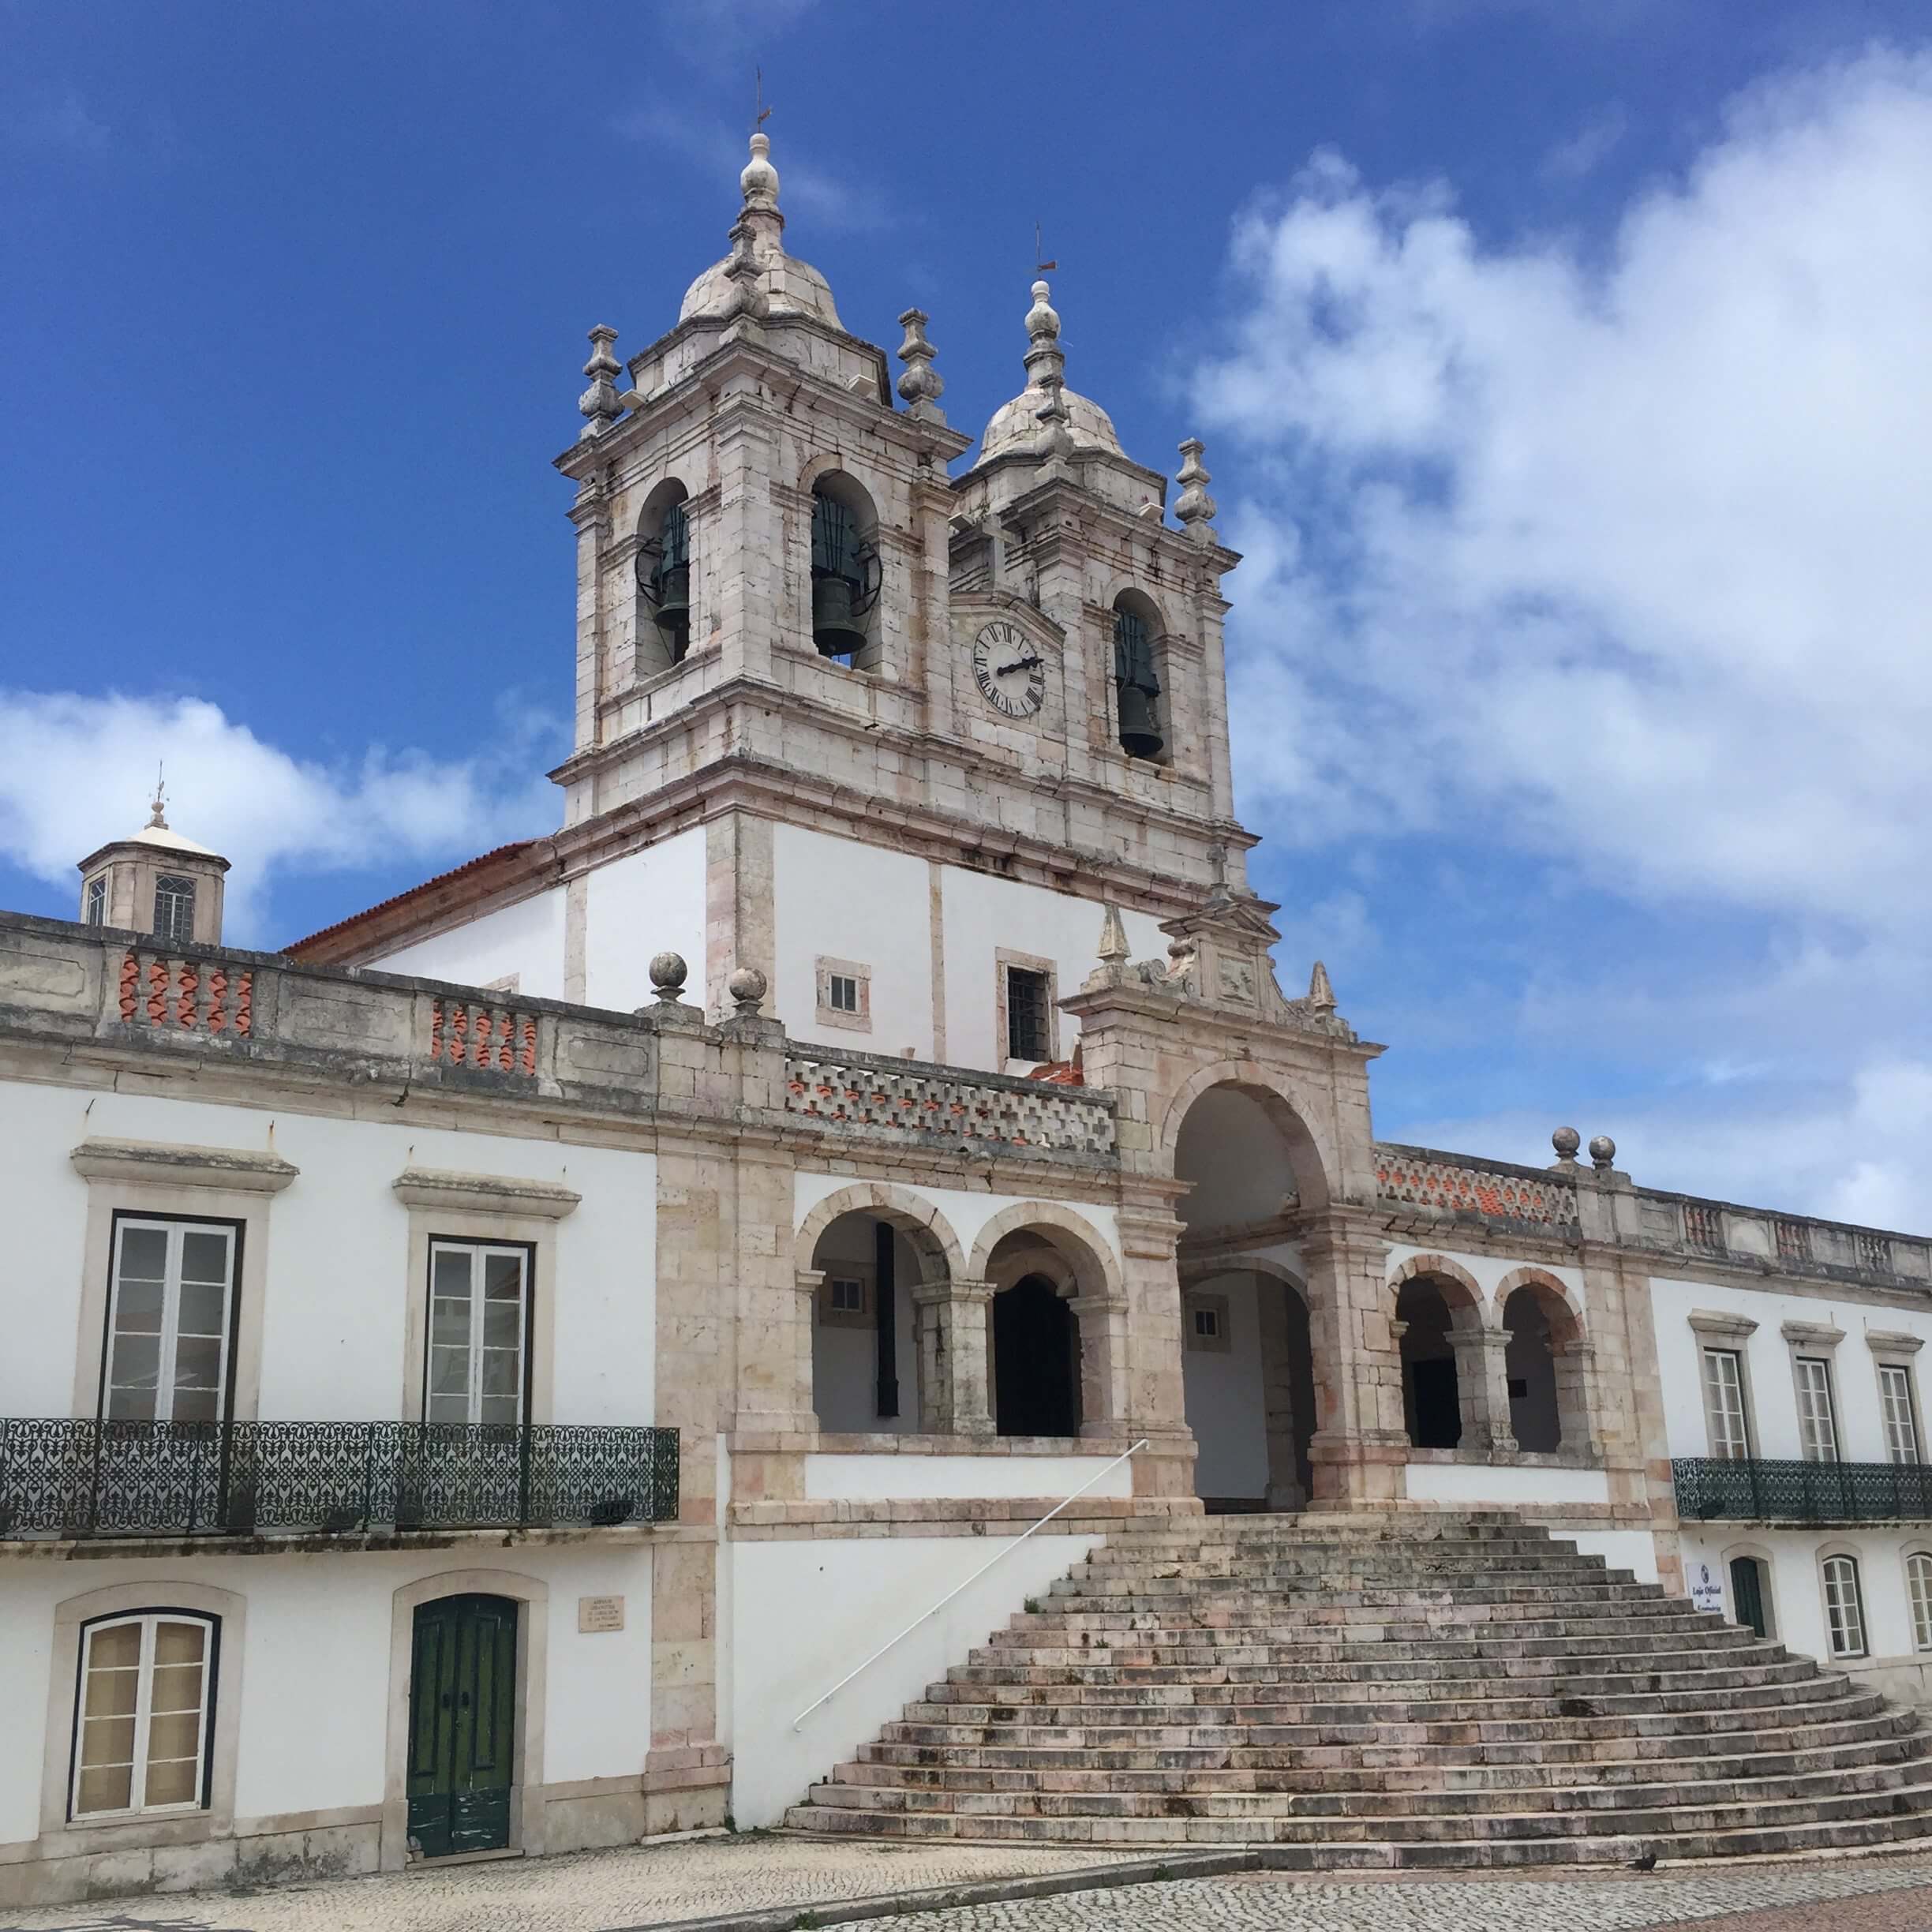 O Sitio Portugal church